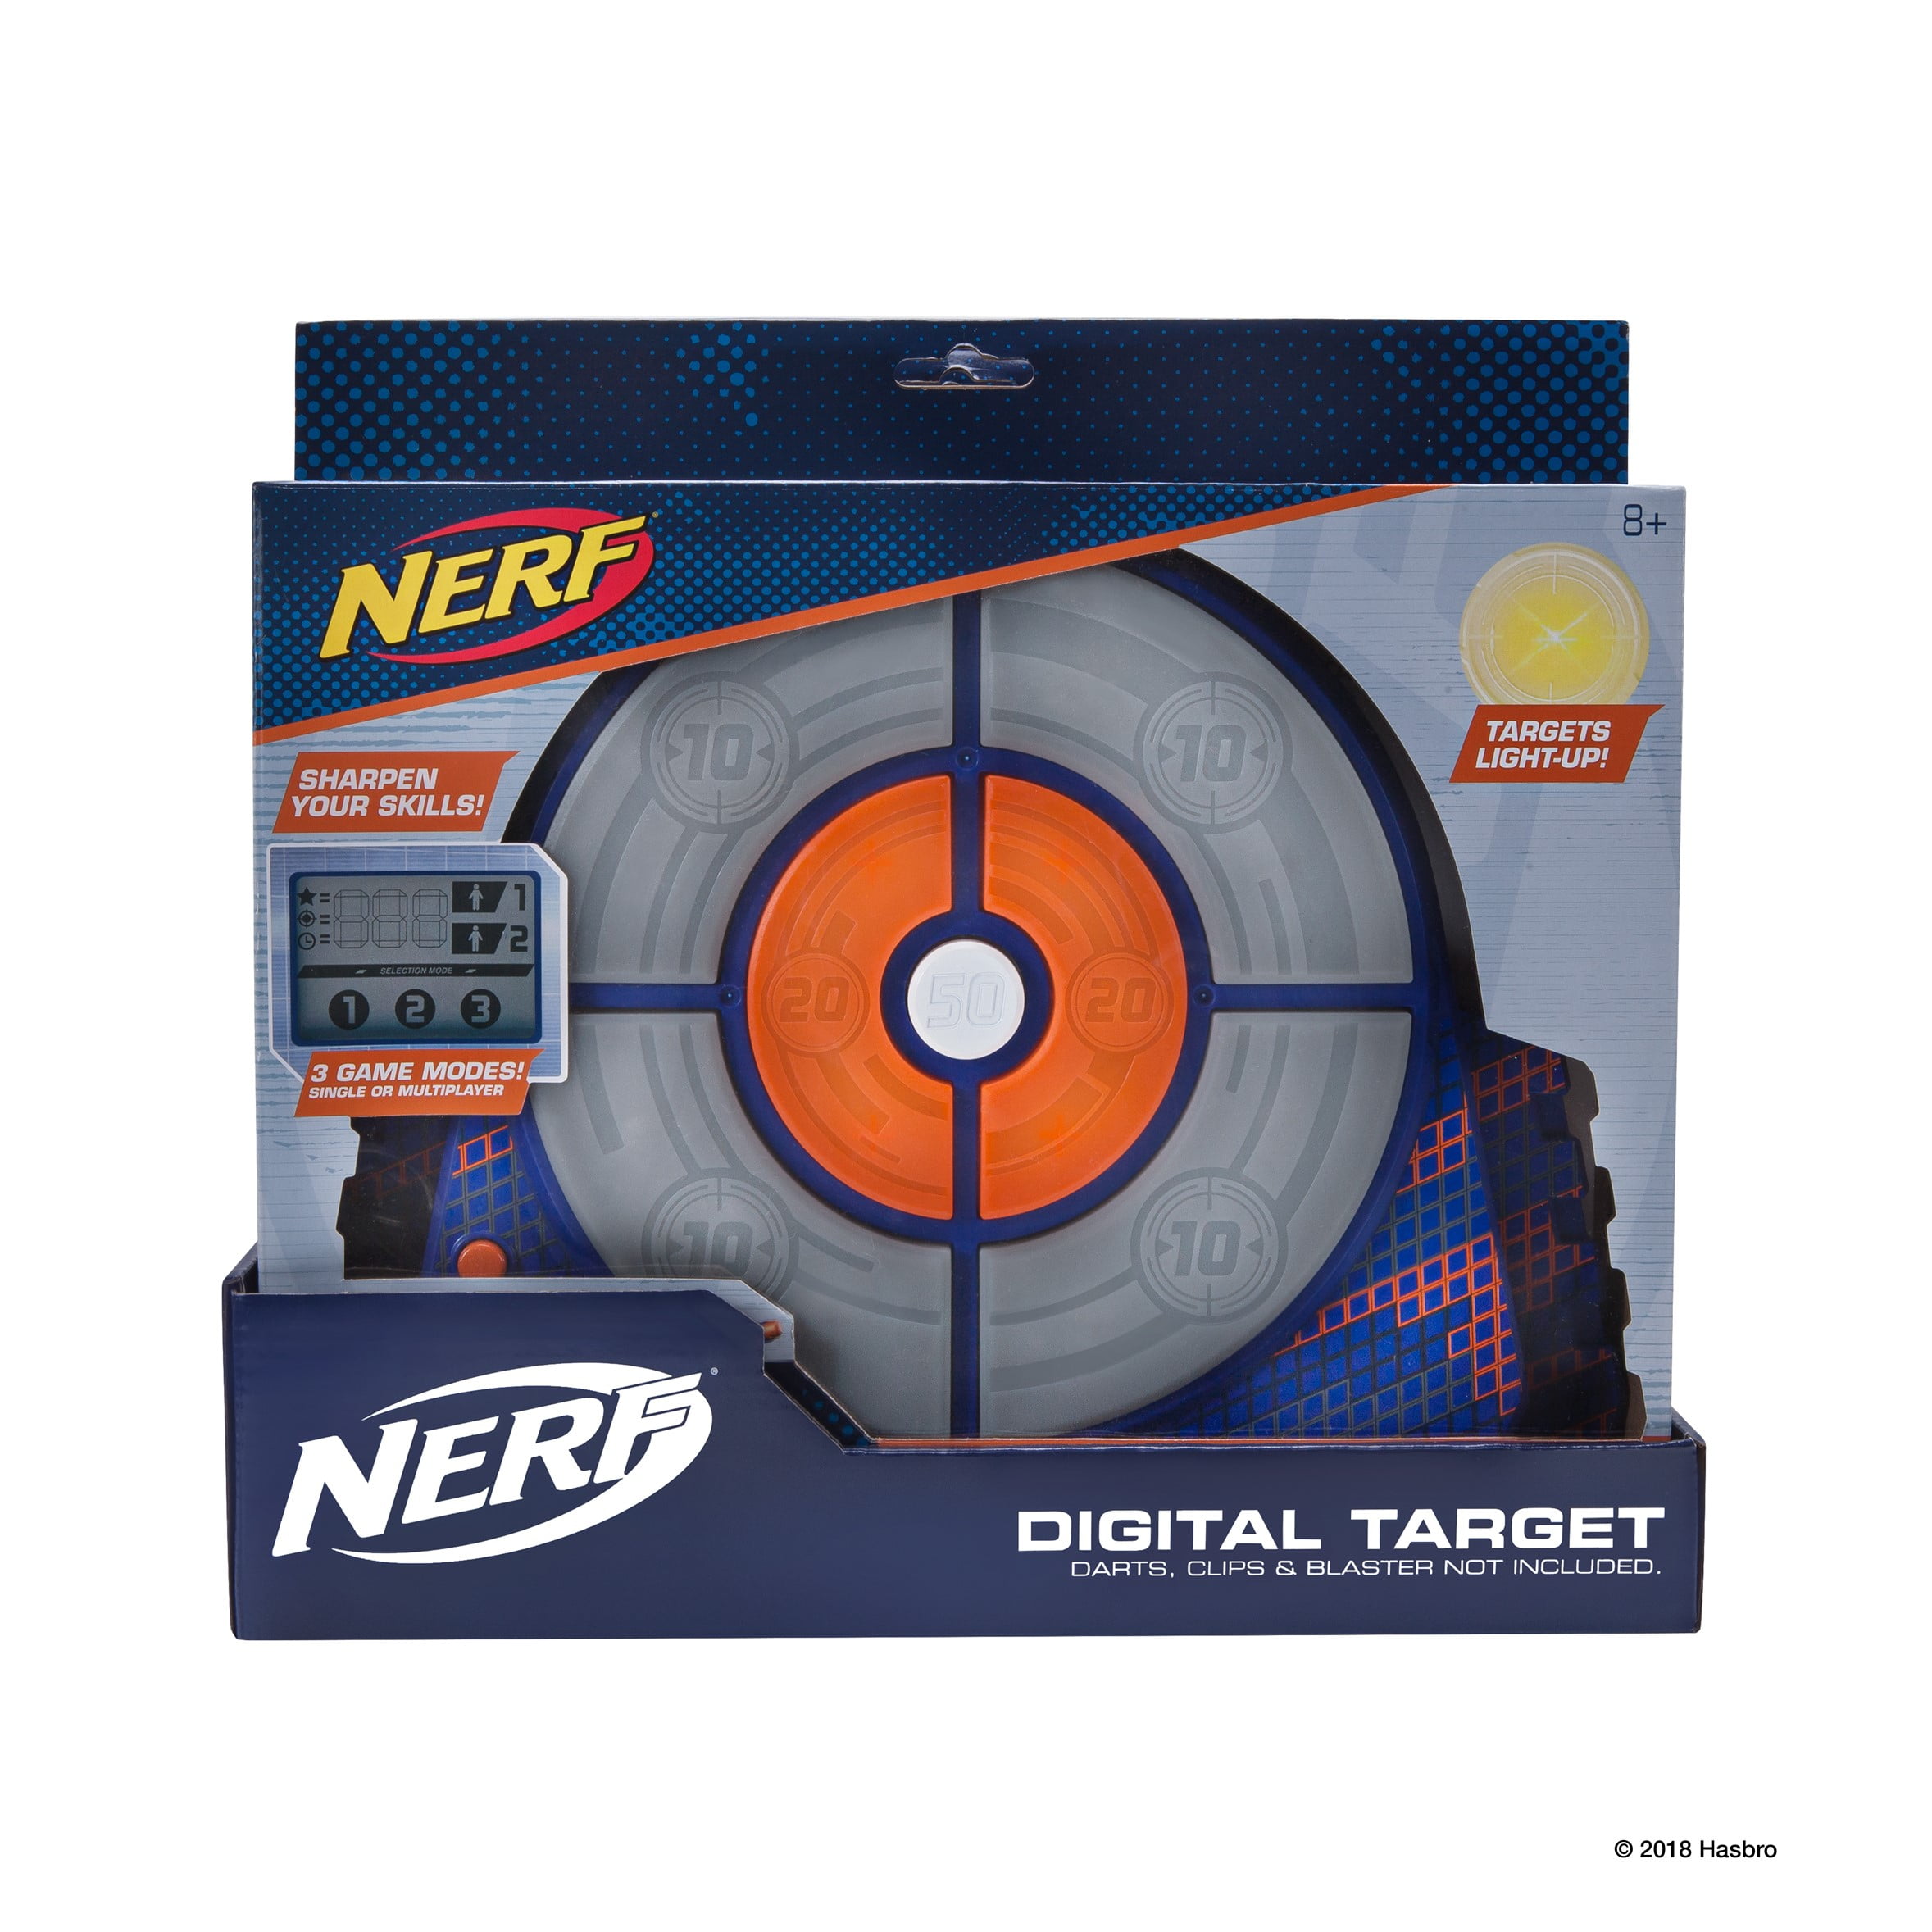 N-Strike Digital Target Walmart.com